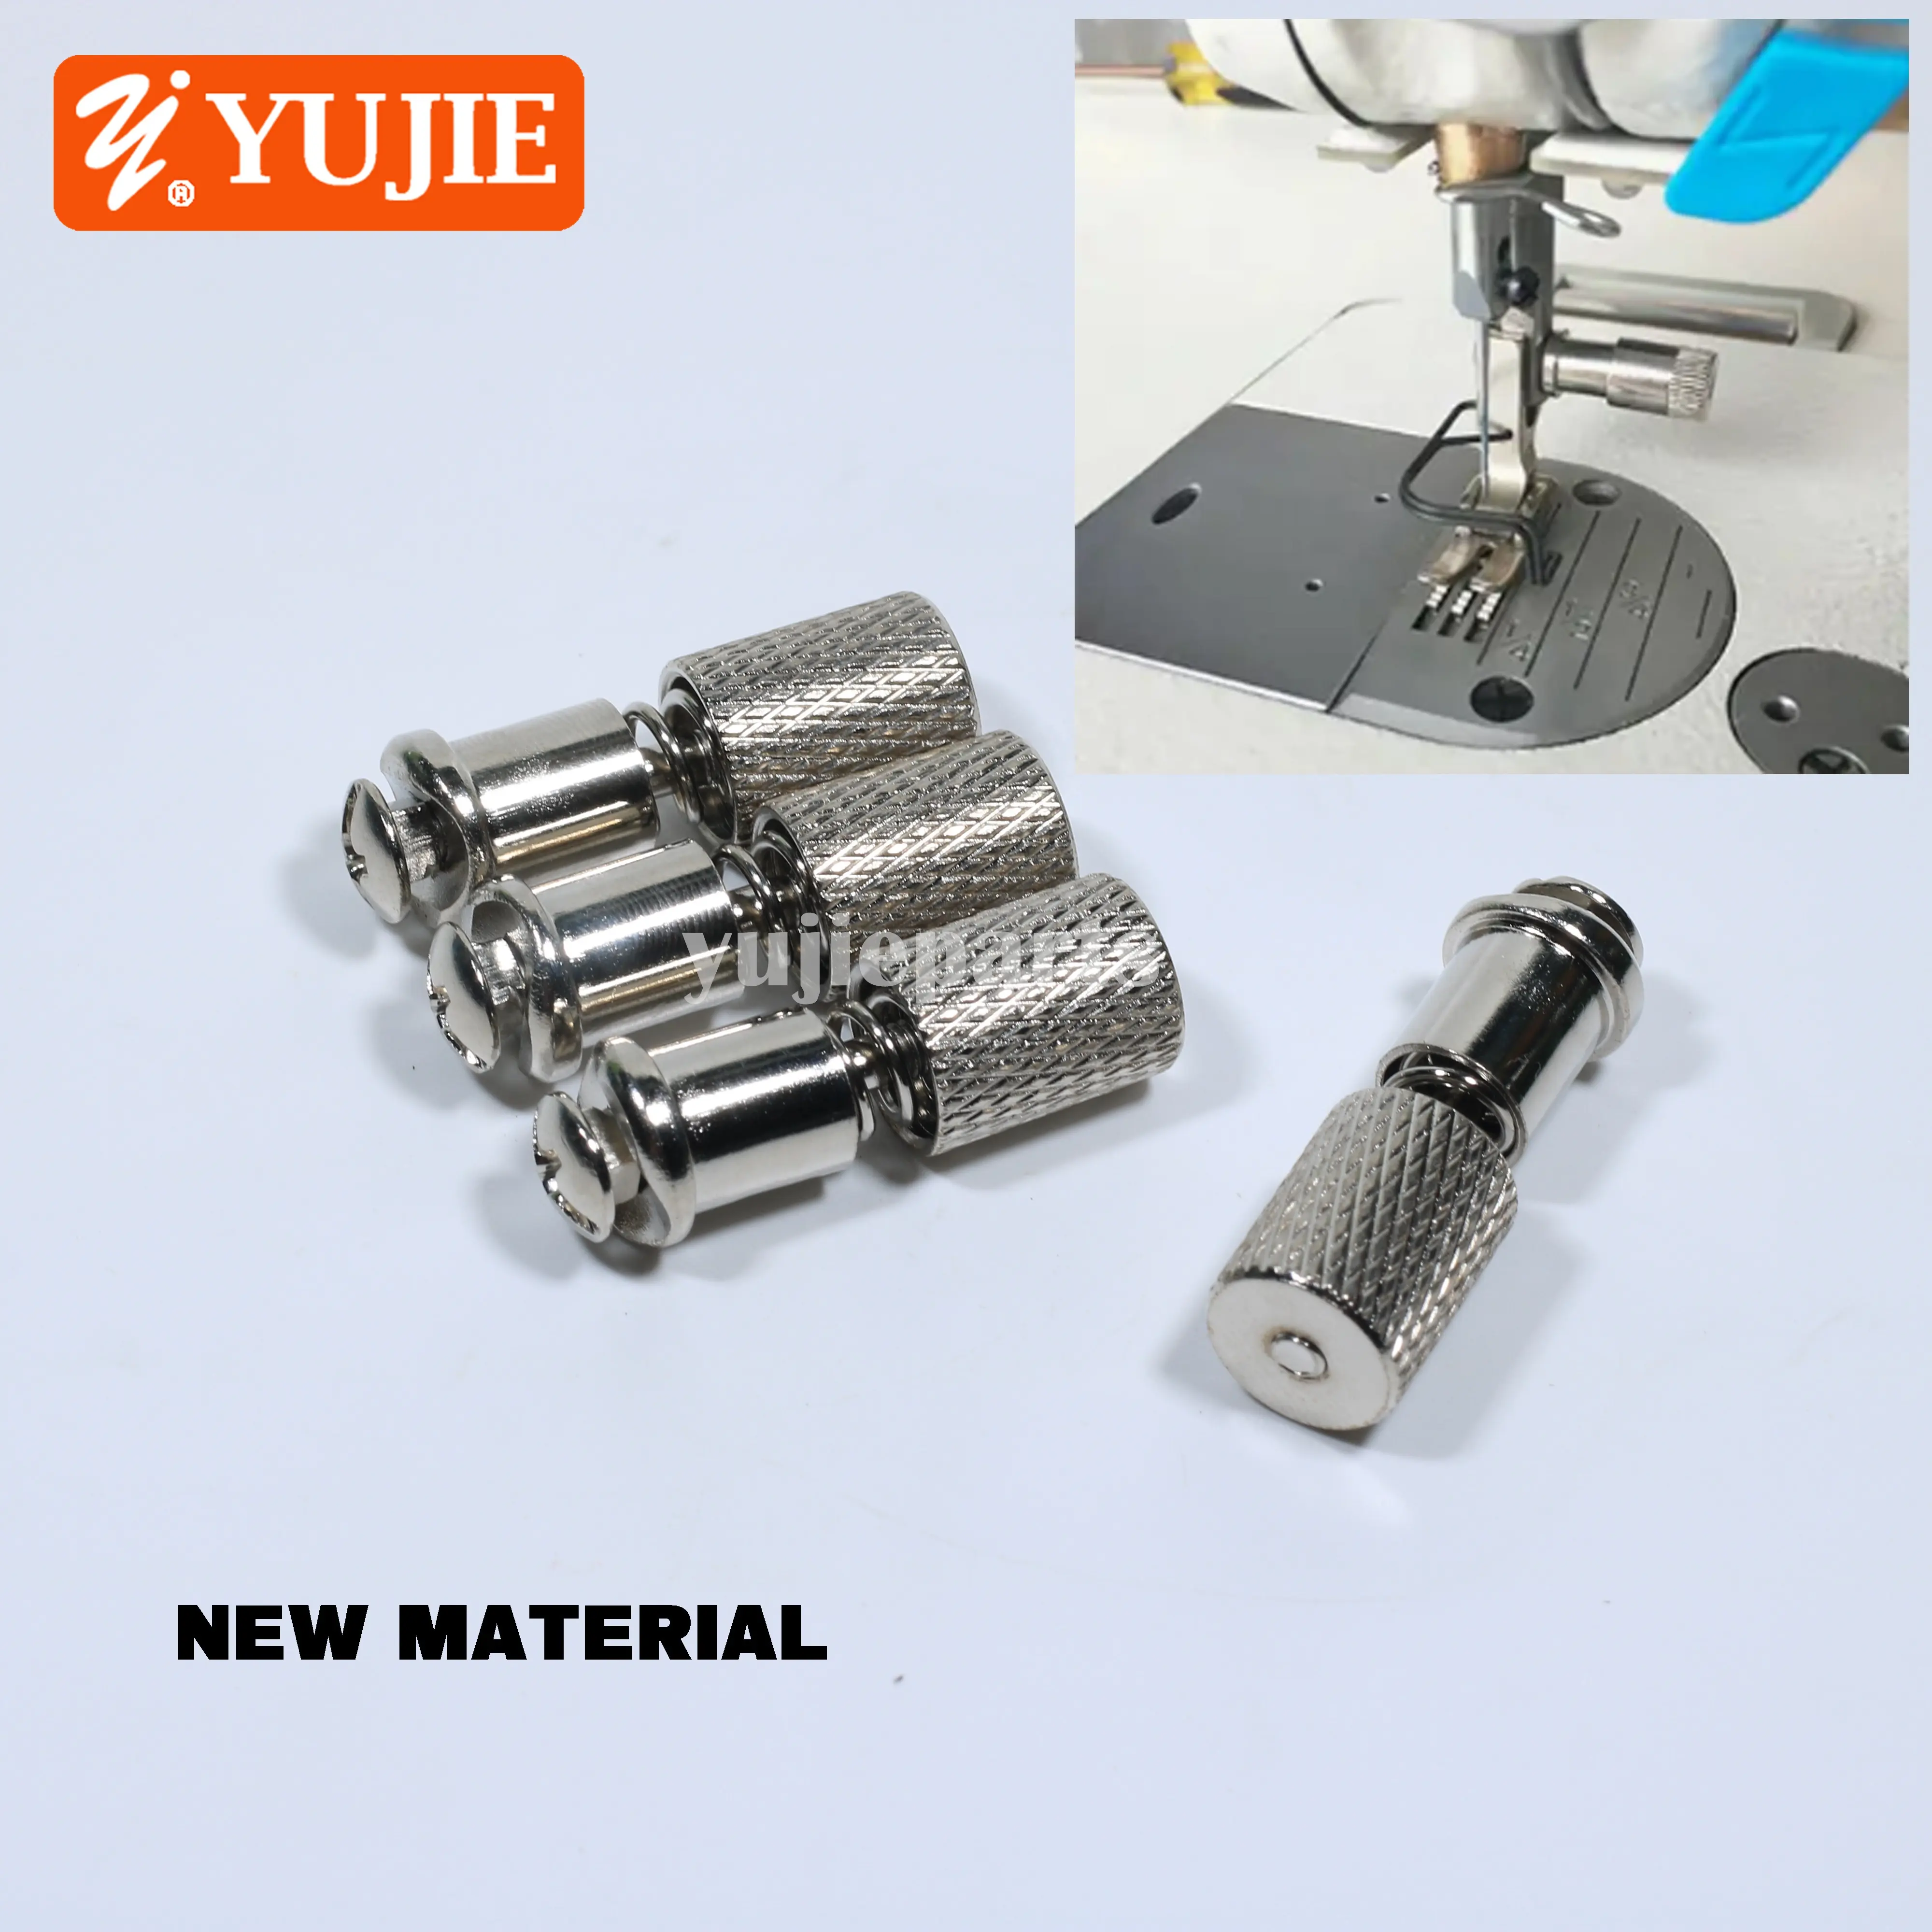 Nuevo tornillo de cambio rápido de prensatelas para máquina de coser de punto de cadeneta Industrial tornillo de pie de prensatelas de cambio Universal